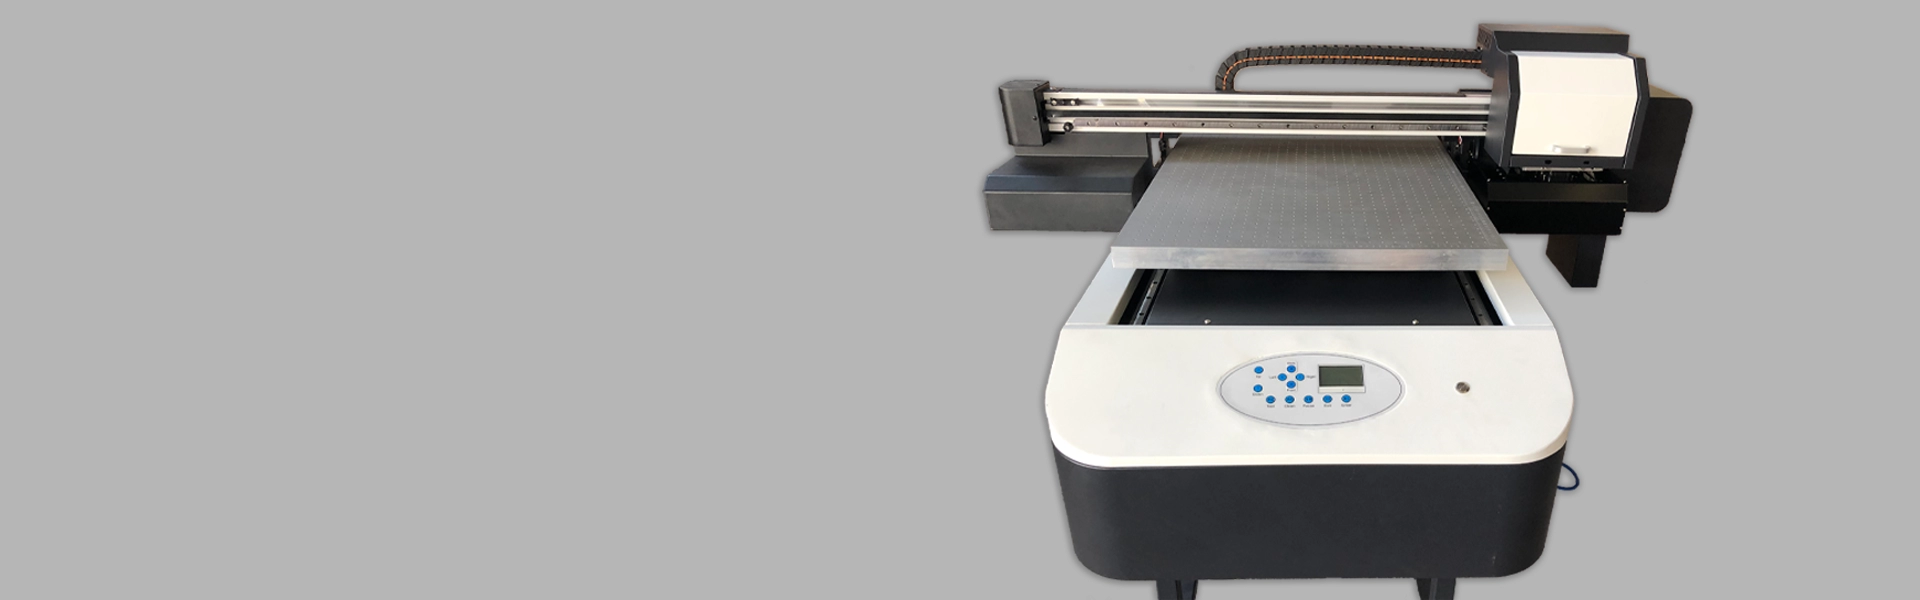 Impresora UV de cama plana 6090